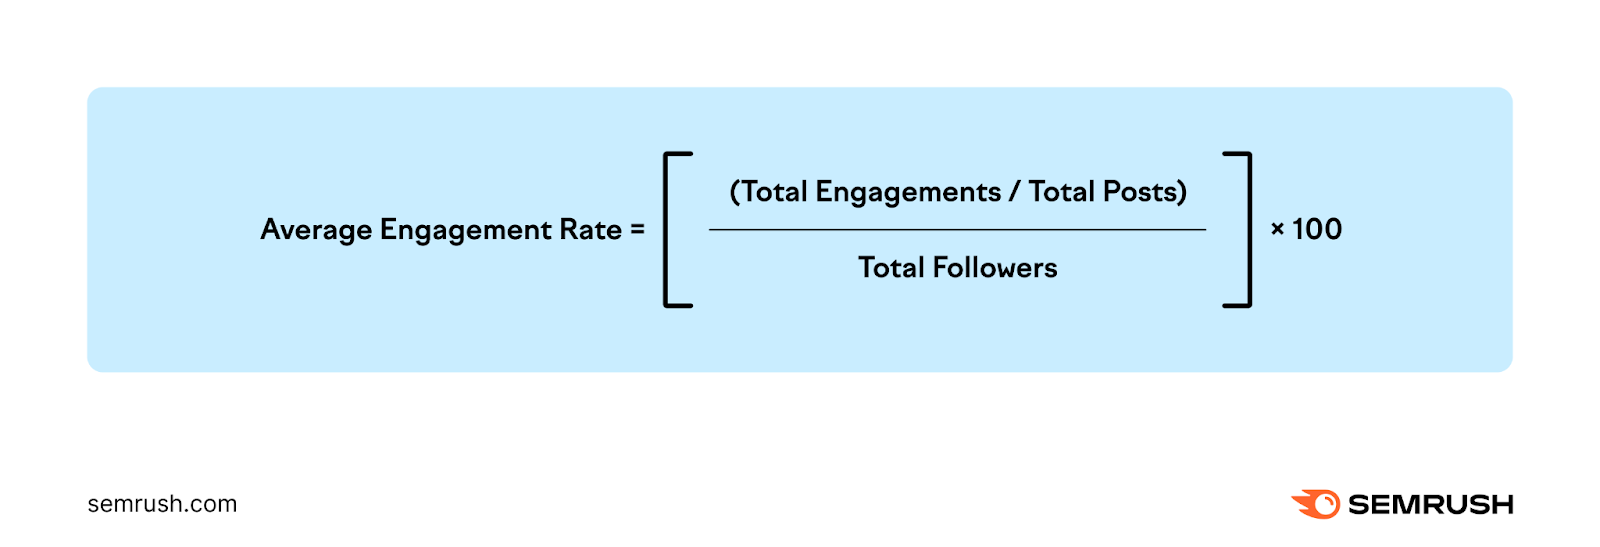 Average engagement rate (AER) formula